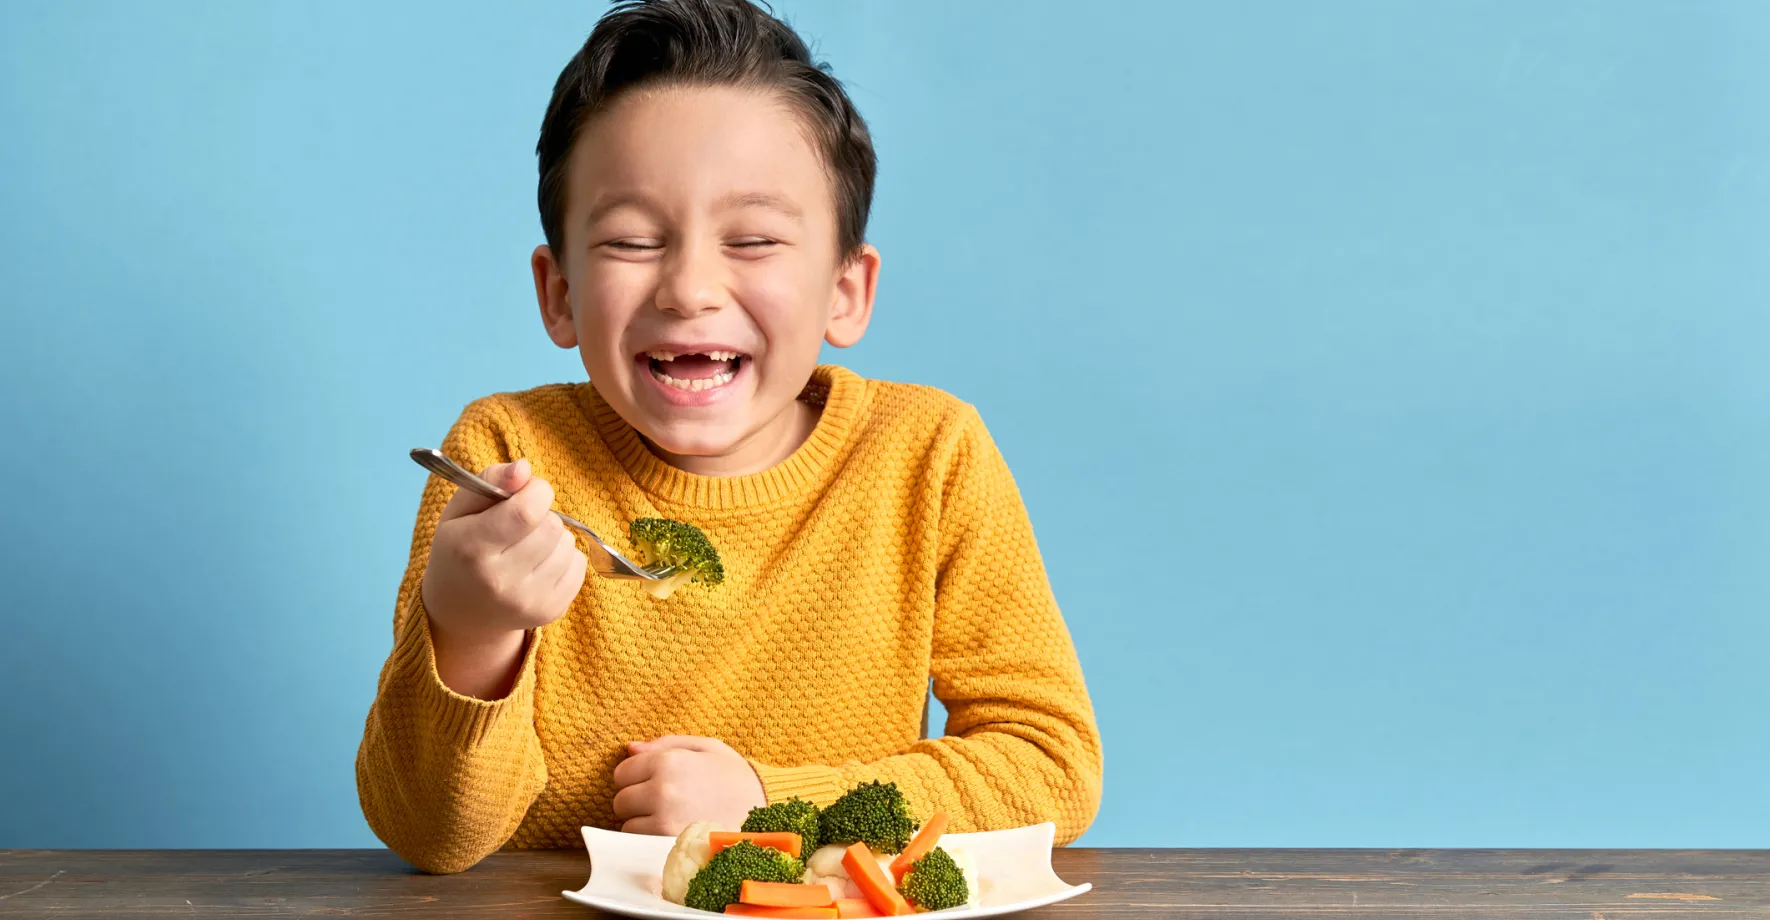 Smiling boy enjoying veggies